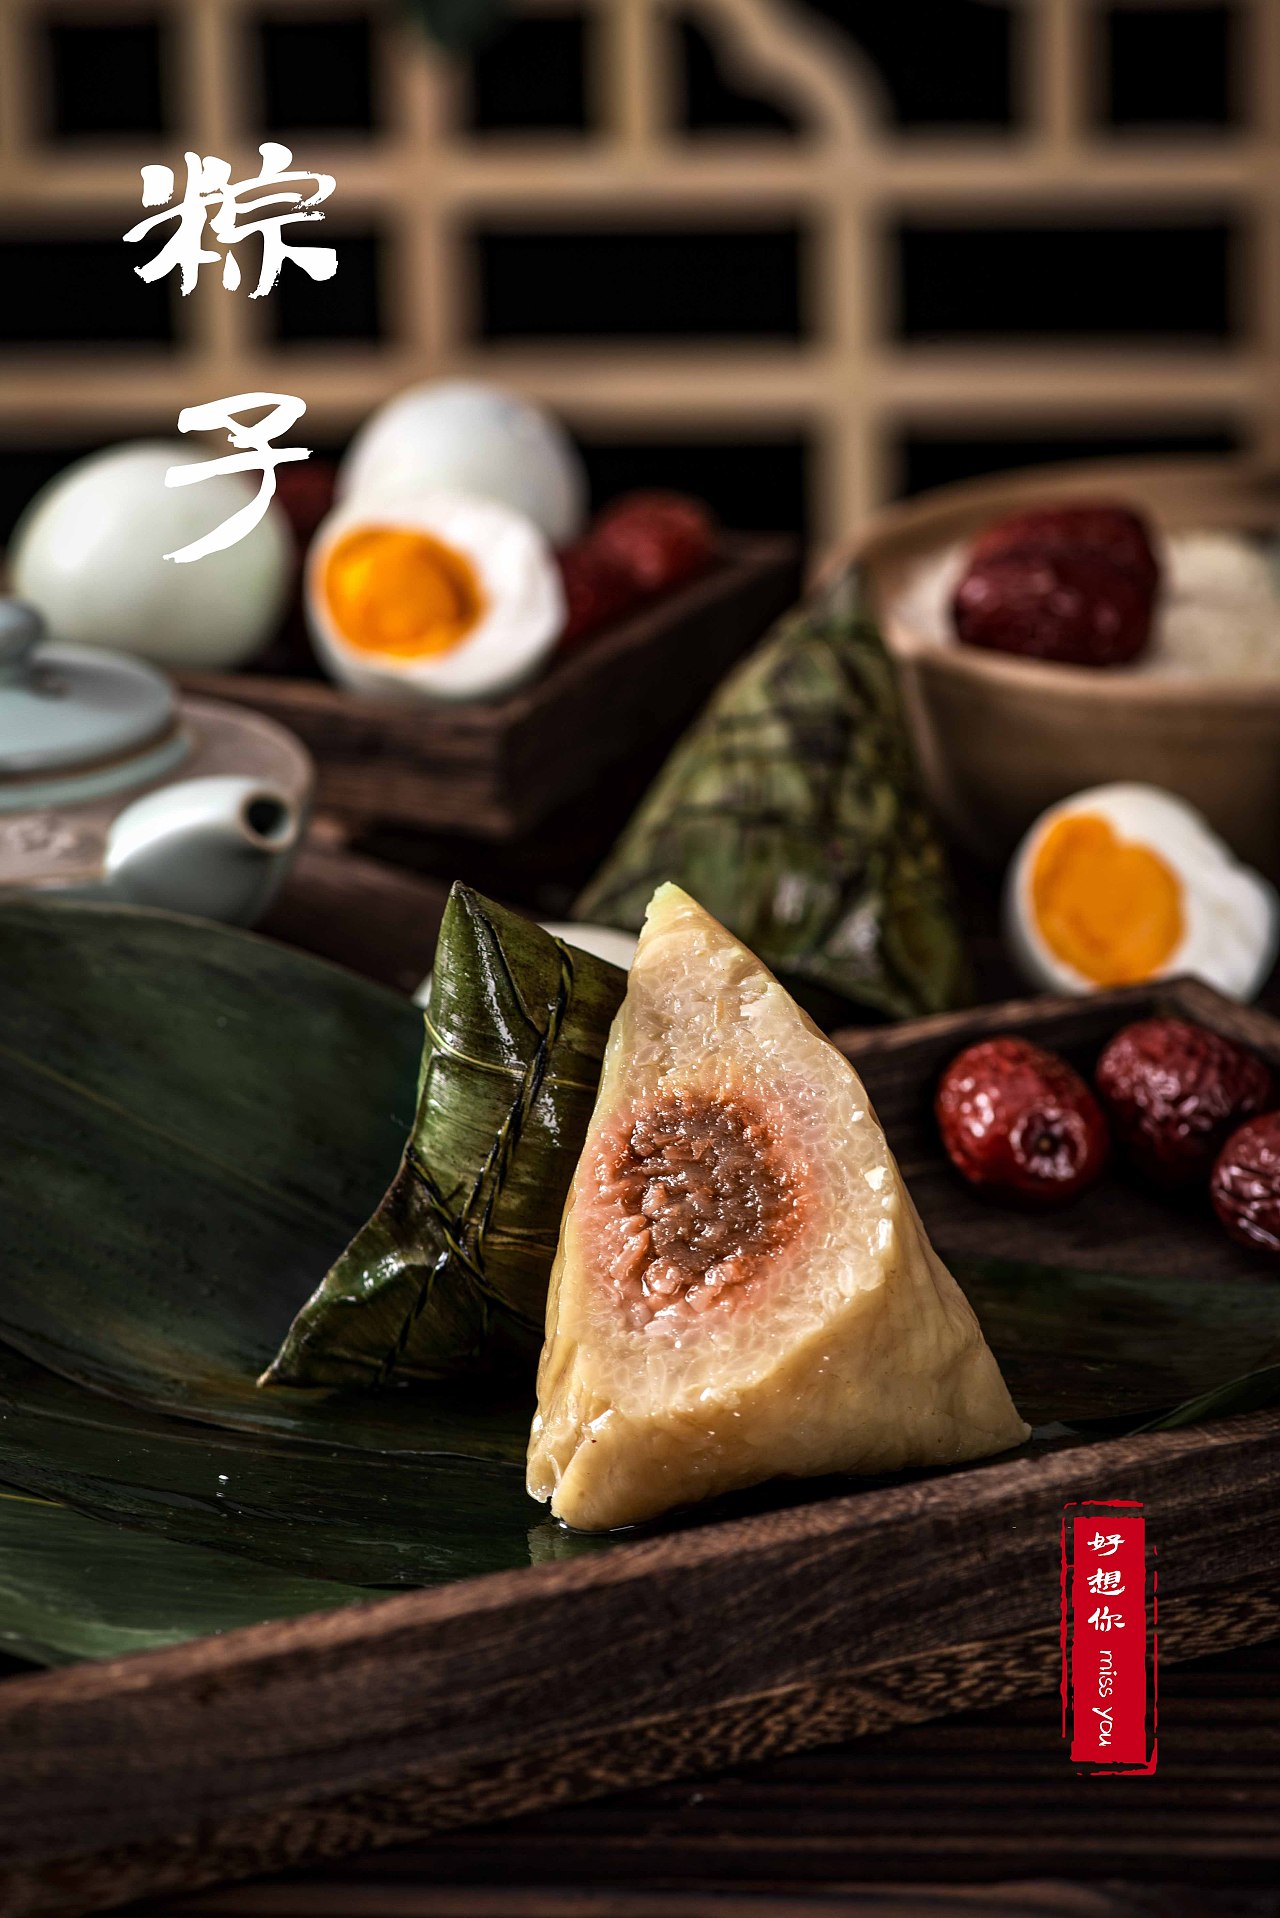 嘉兴粽子在《舌尖上的中国》中飘香美味被展现，被誉为粽子之王